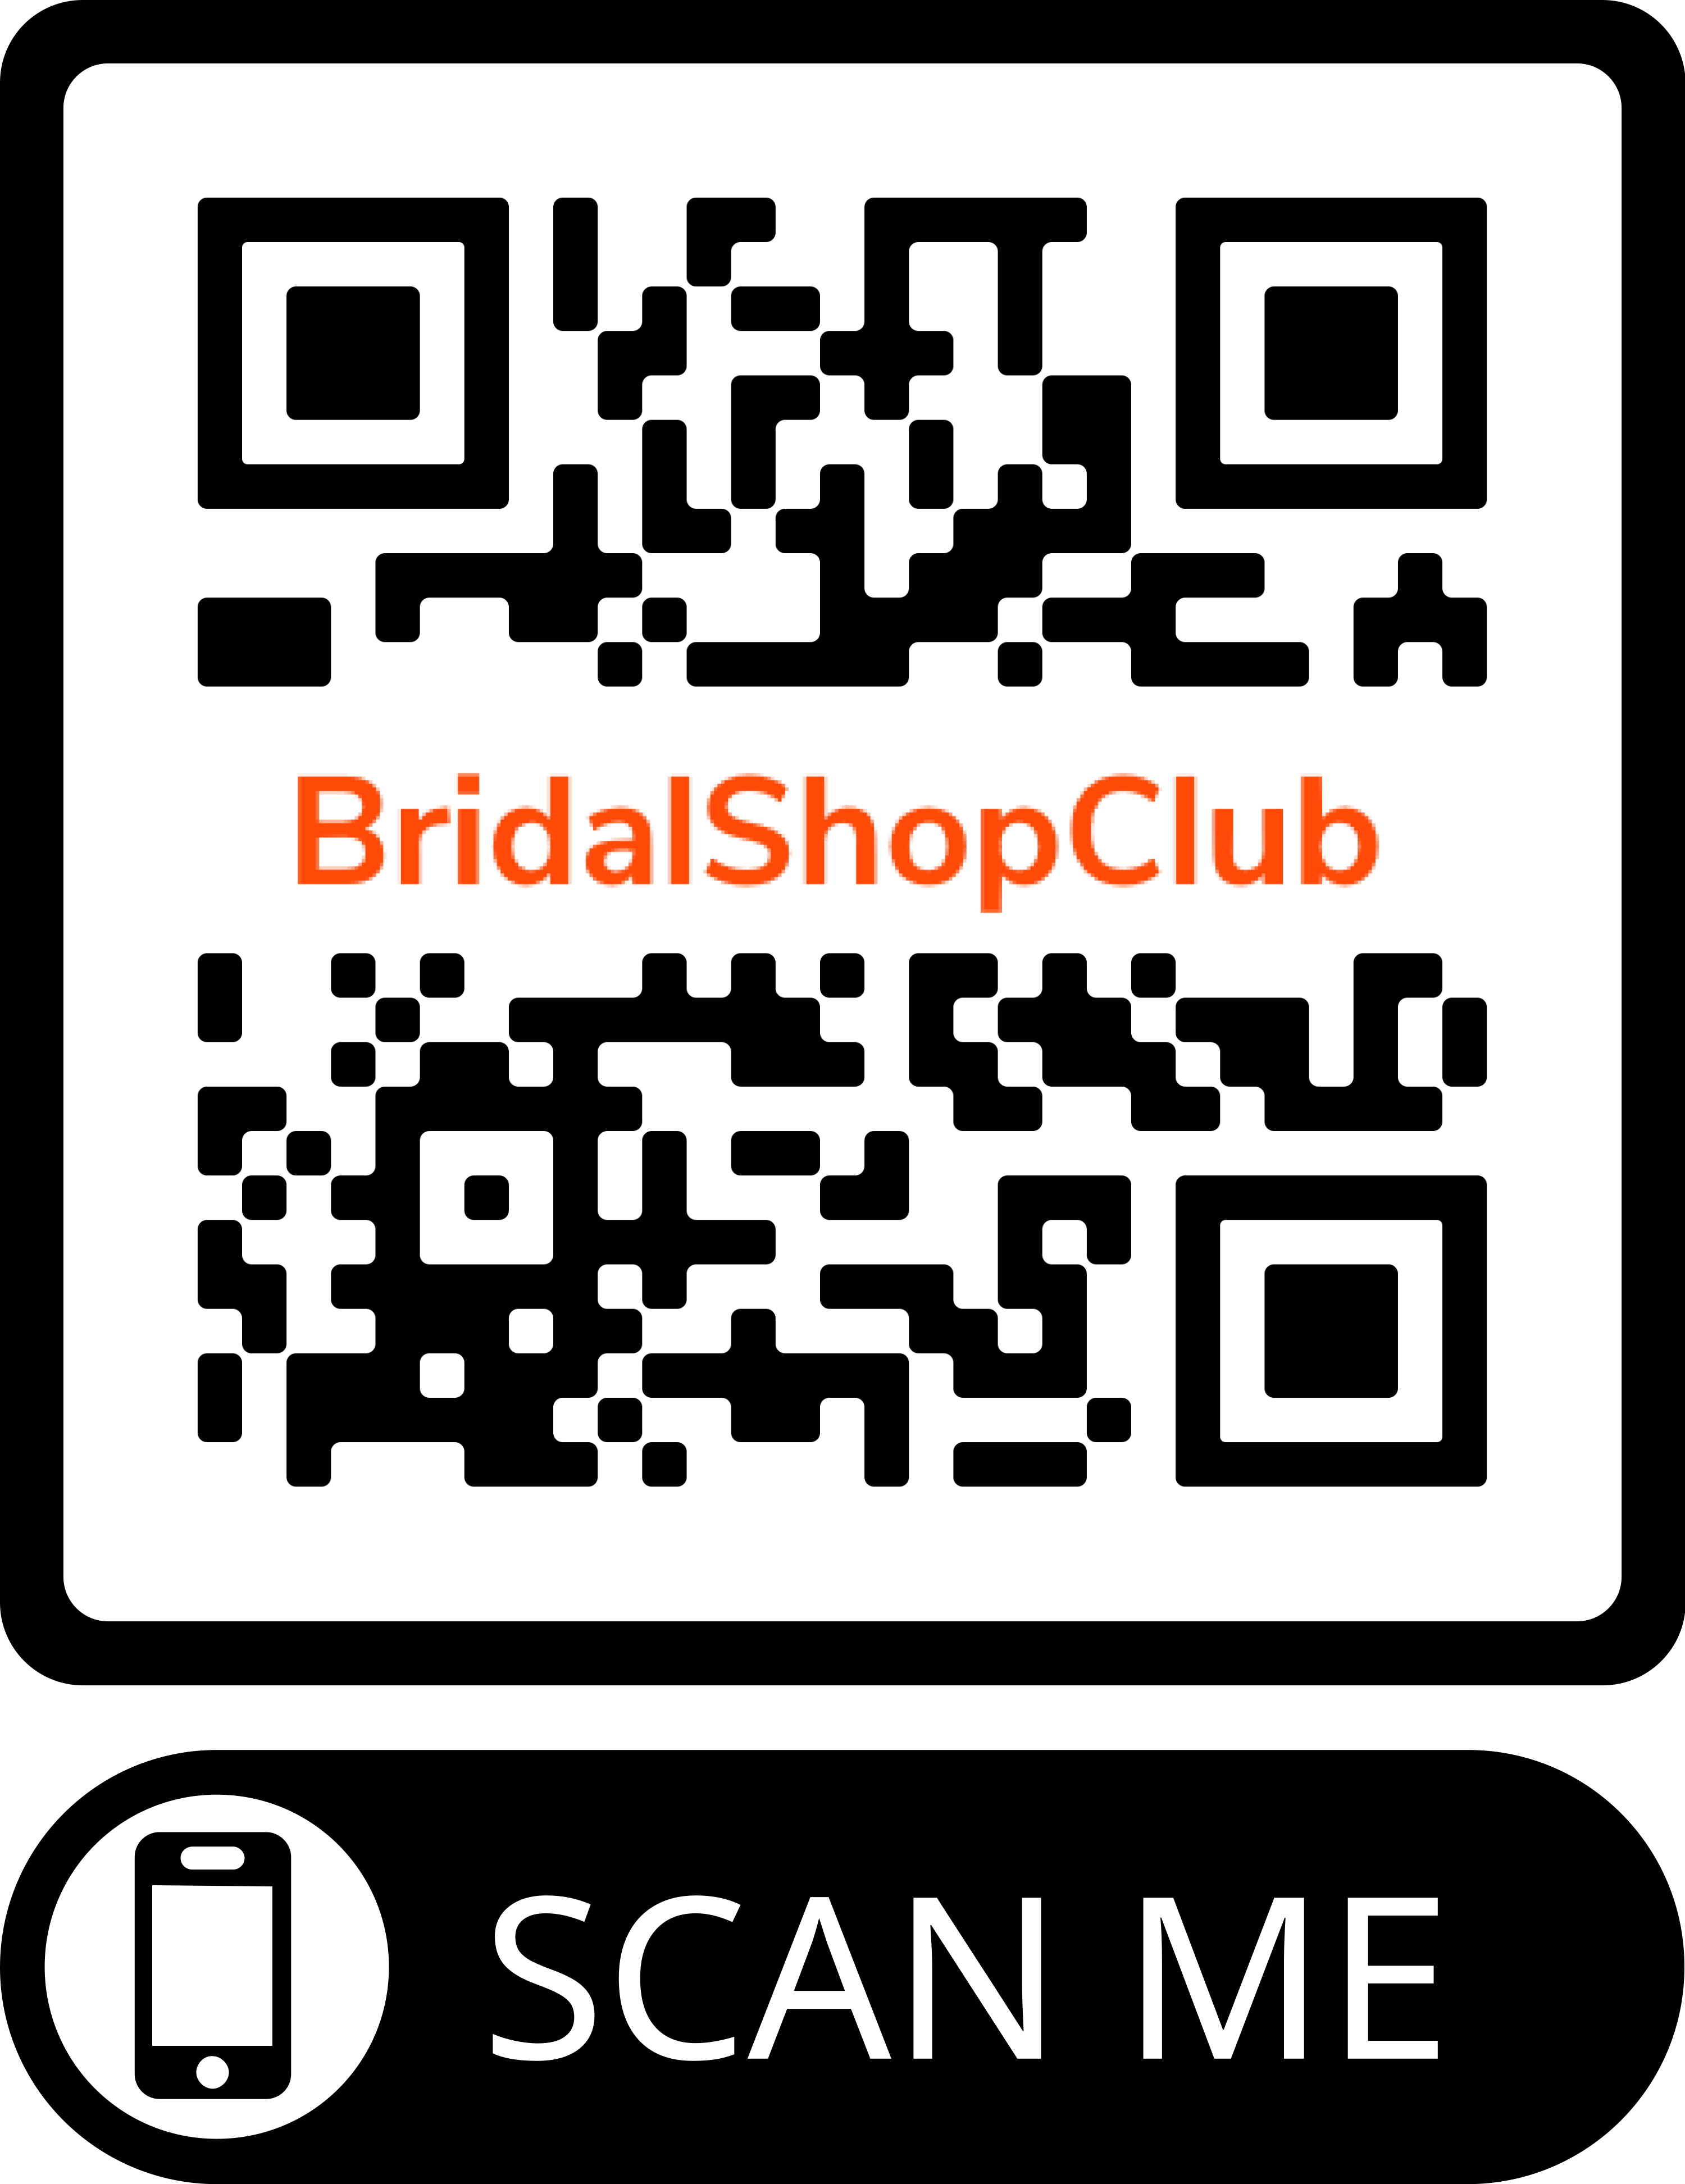 Bridalshopclub.com